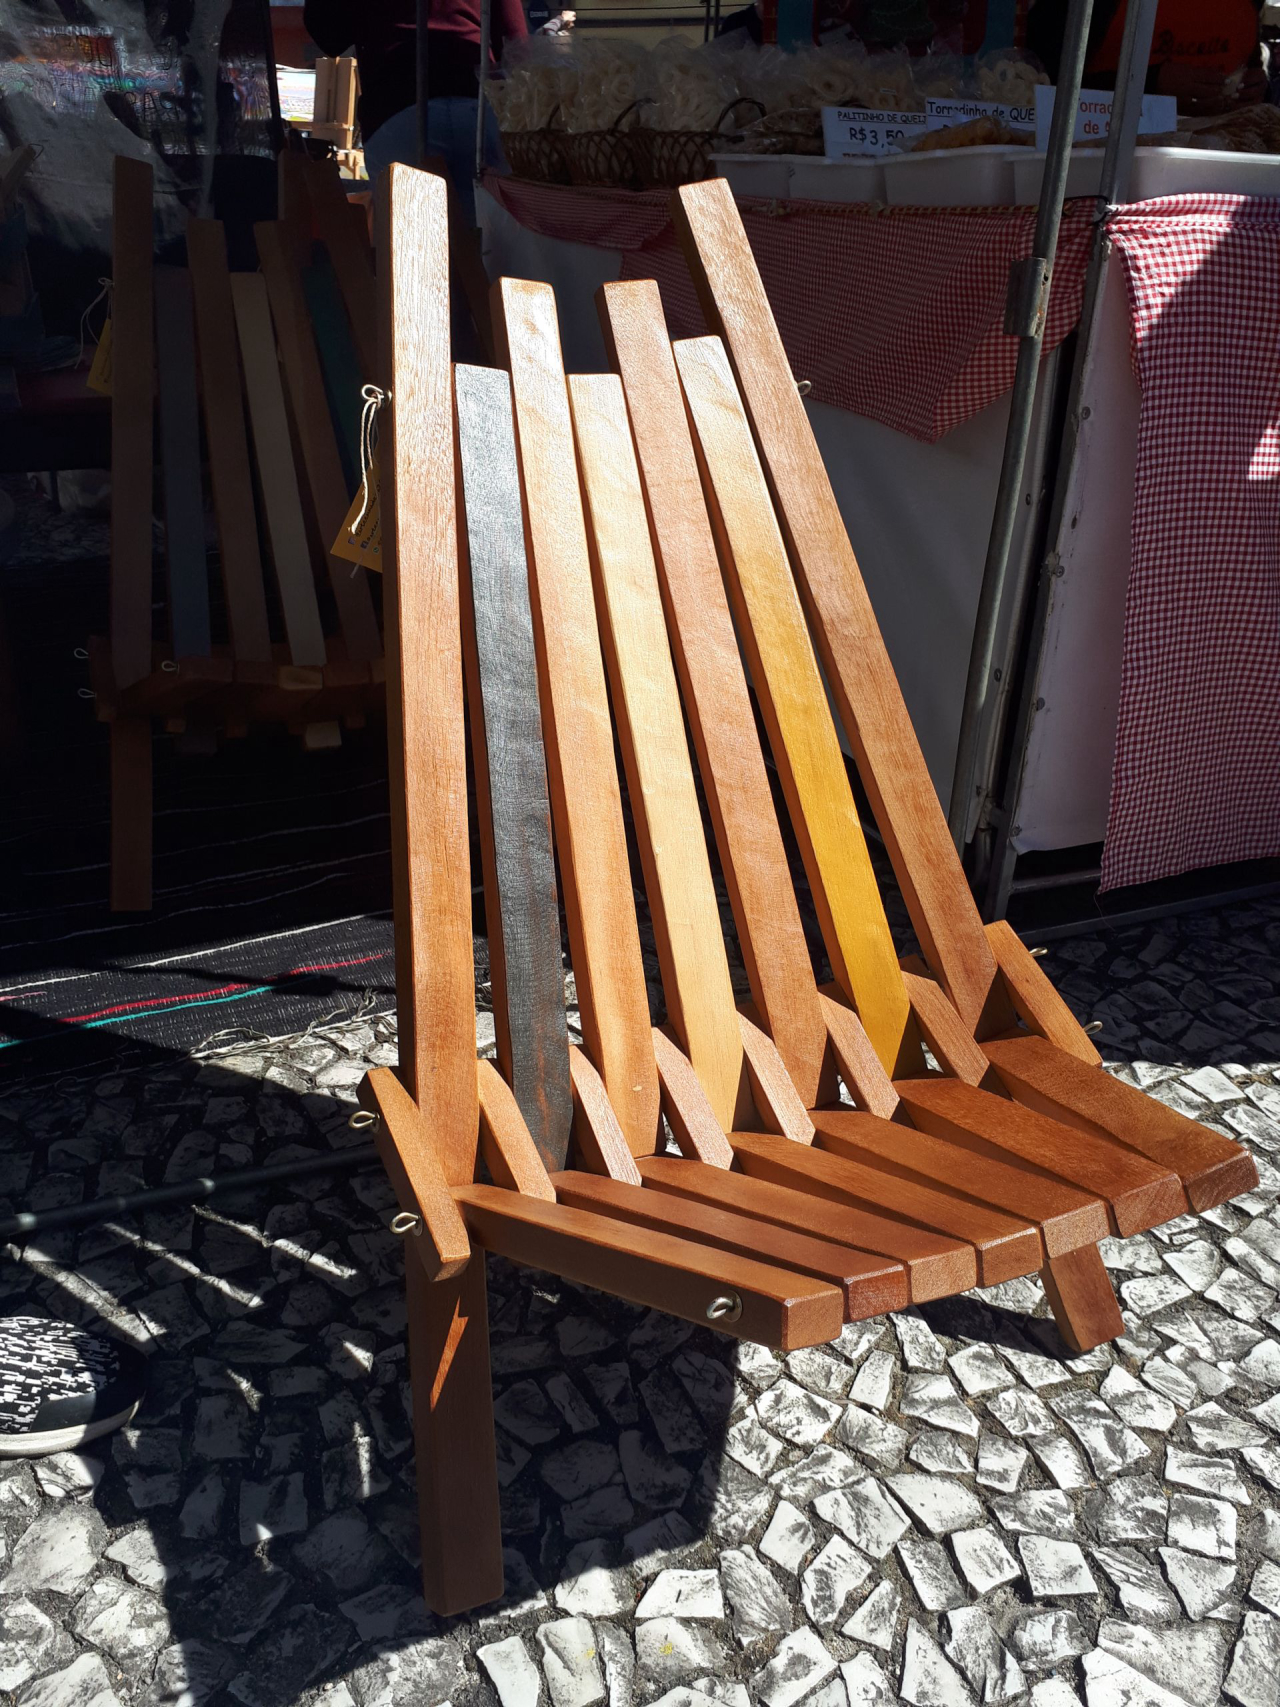 Cadeira em madeira, vendida na feira do Largo por R$ 250 (foto: Amanda Milléo / Gazeta do Povo)